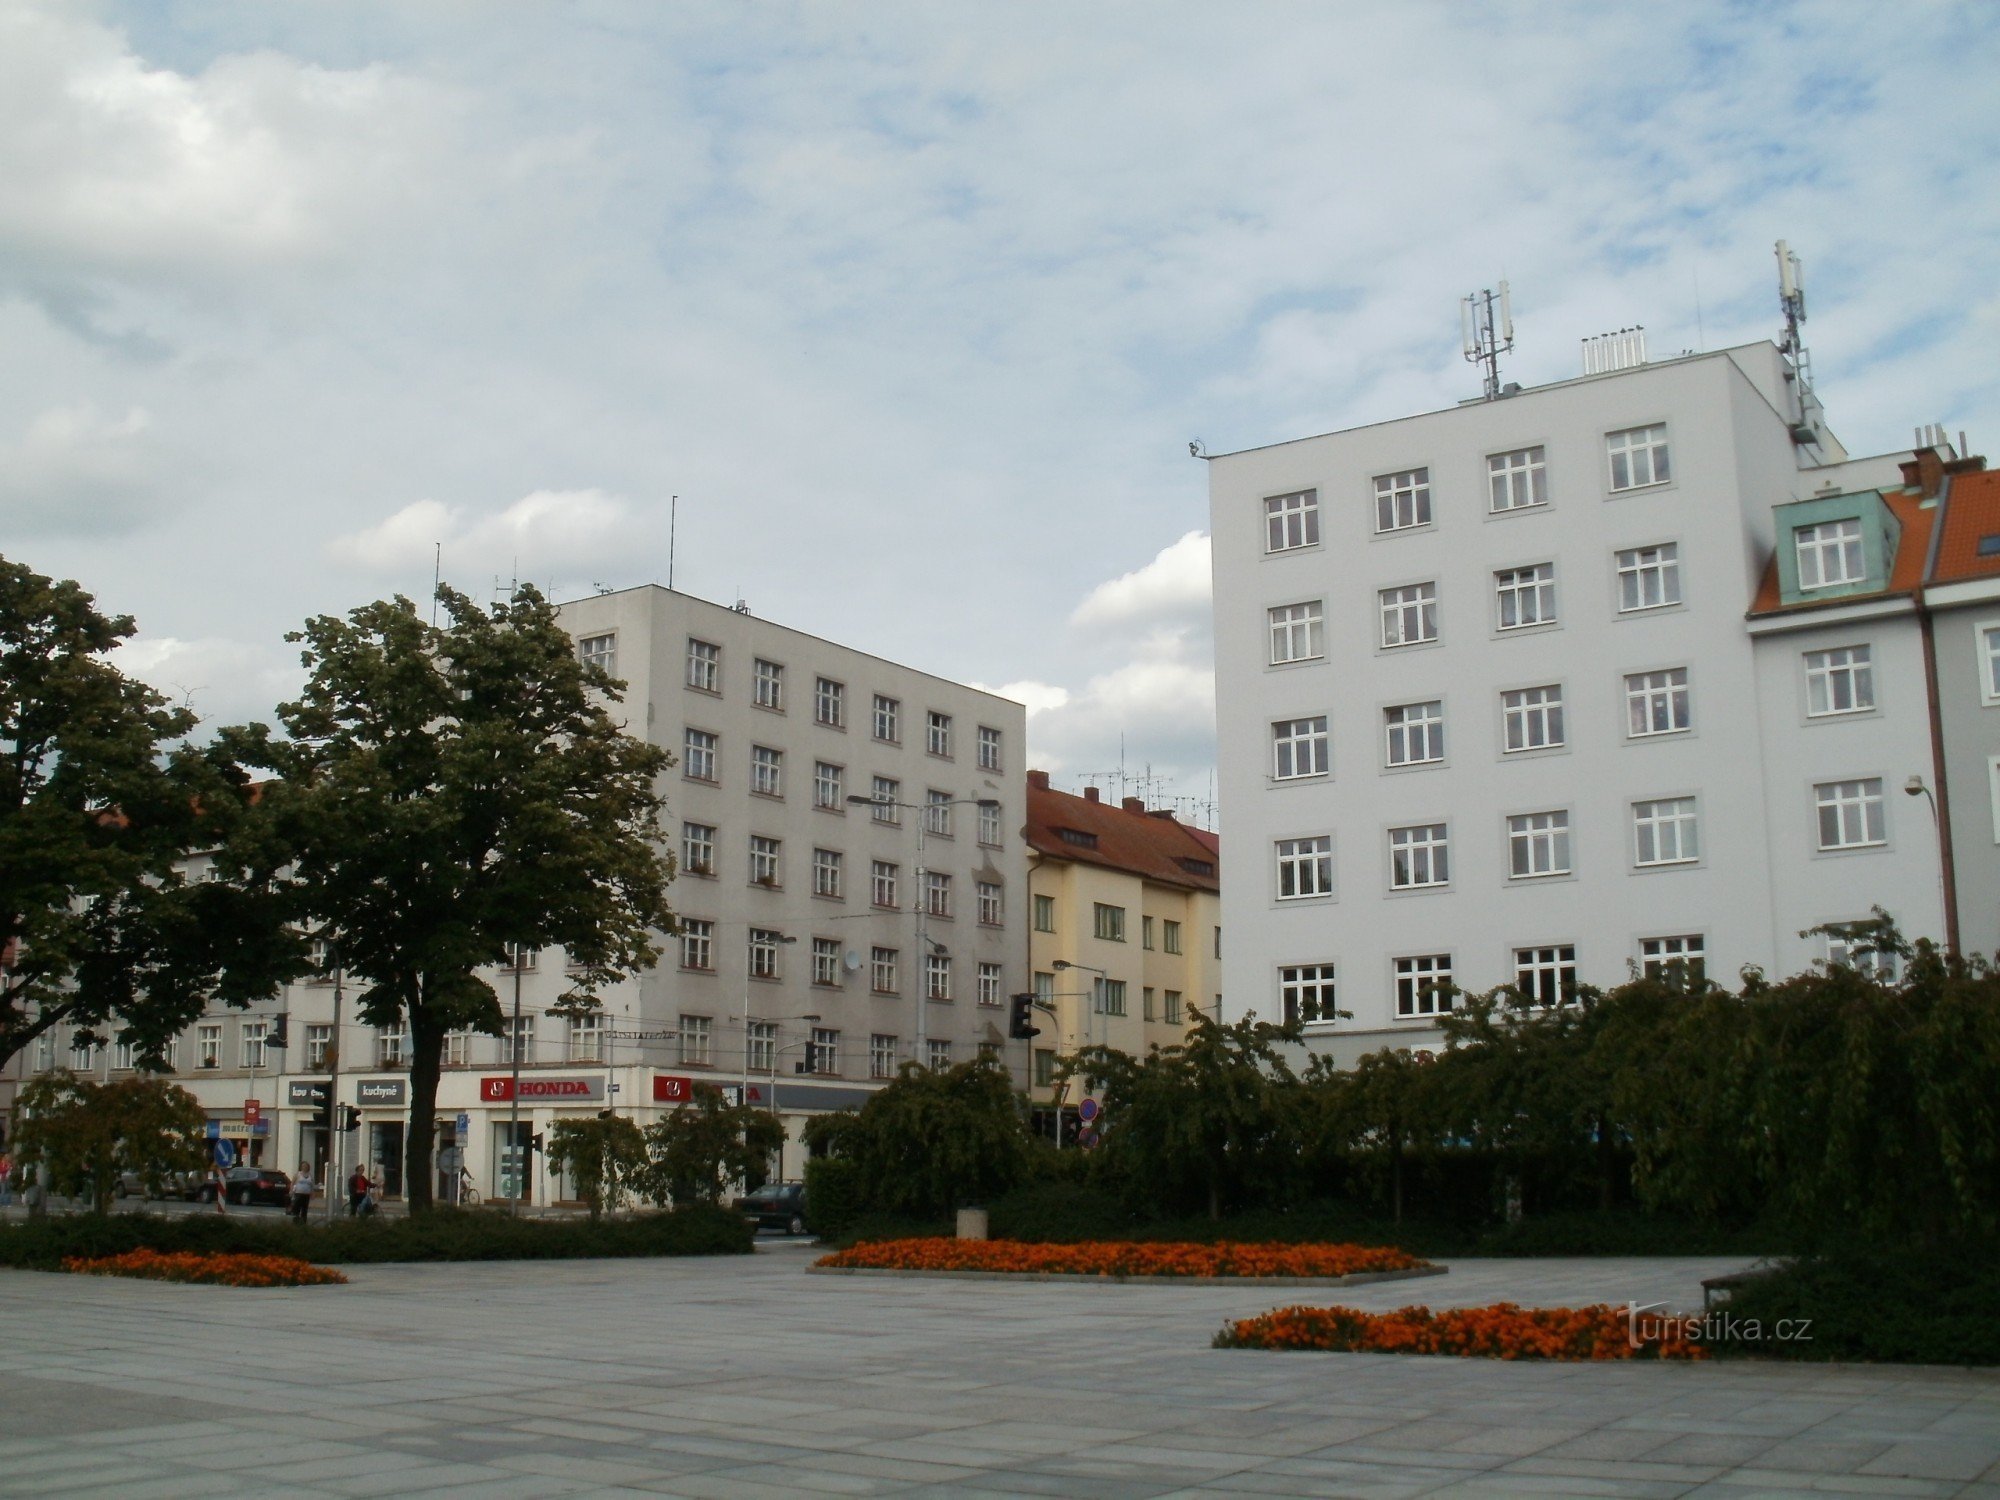 Hradec Králové - Place d'Ulrich